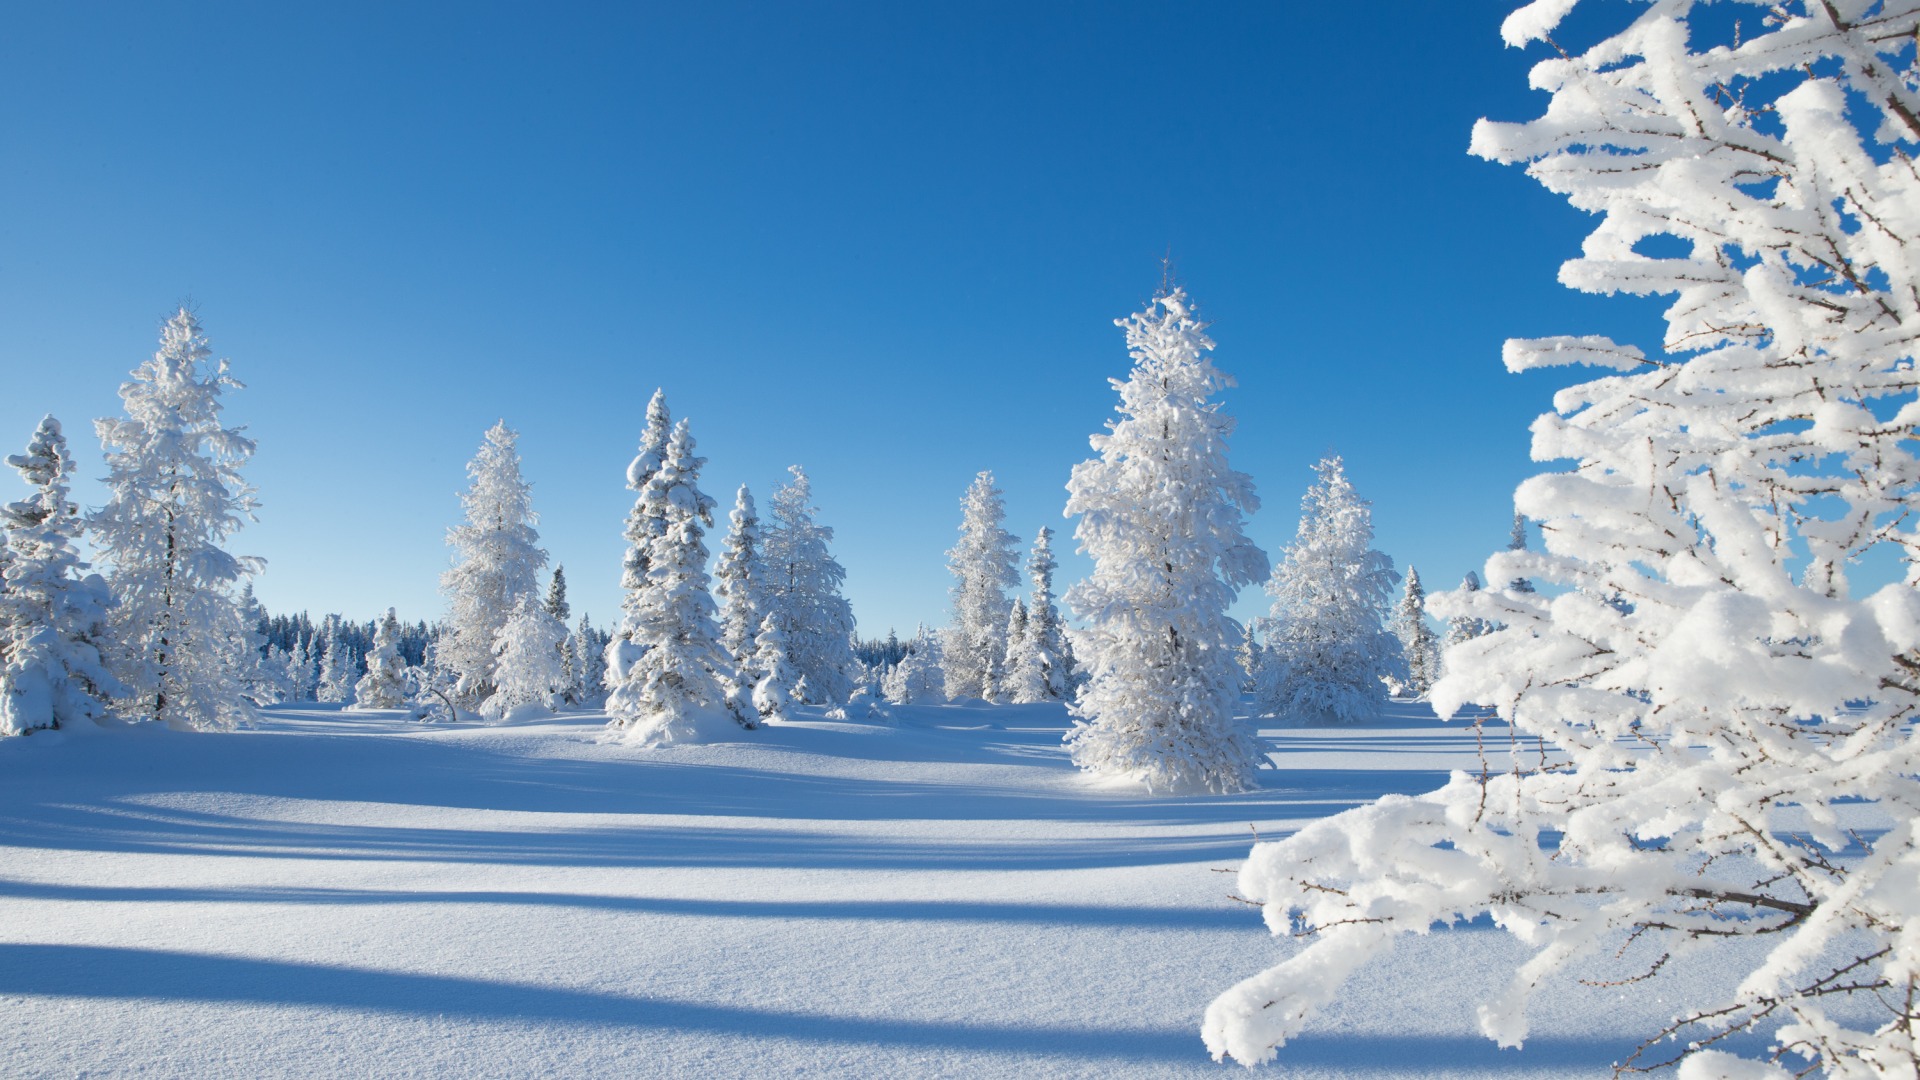 冬天风景树雪景图天空冬天雪景桌面壁纸 风景壁纸 壁纸下载 彼岸桌面